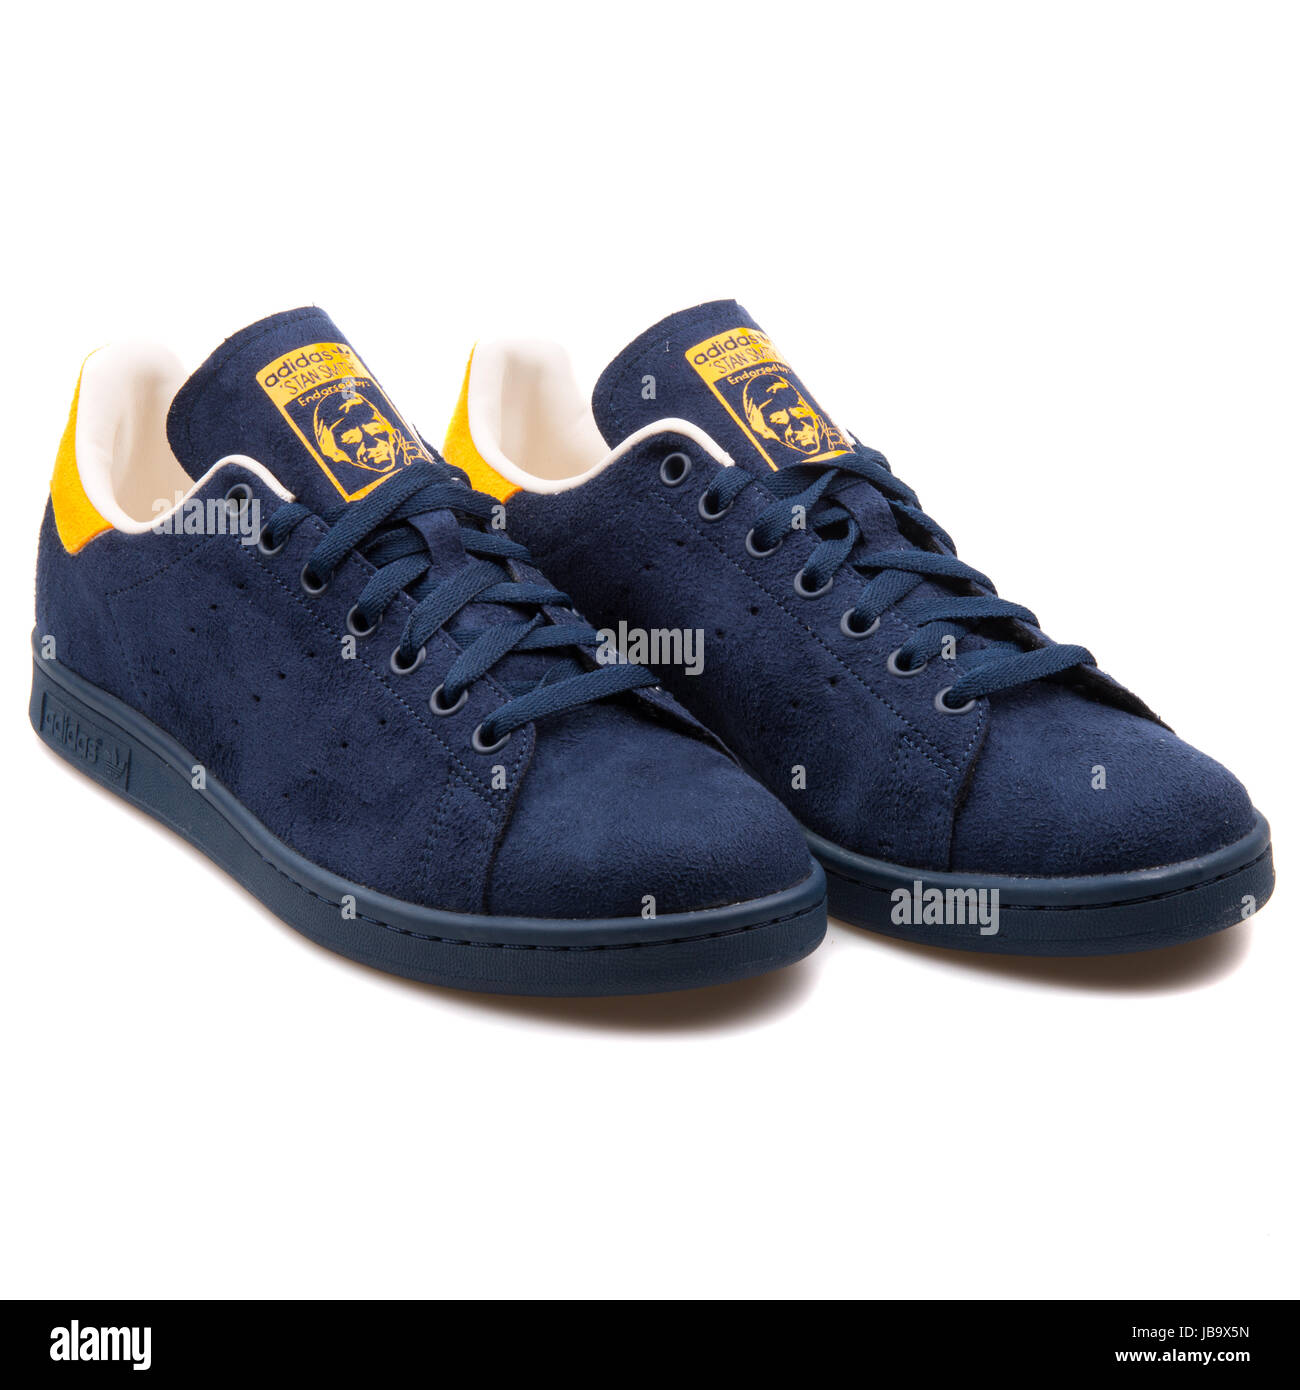 Adidas Stan Smith Navy blauer und gelber Herren Sportschuhe - B24707  Stockfotografie - Alamy